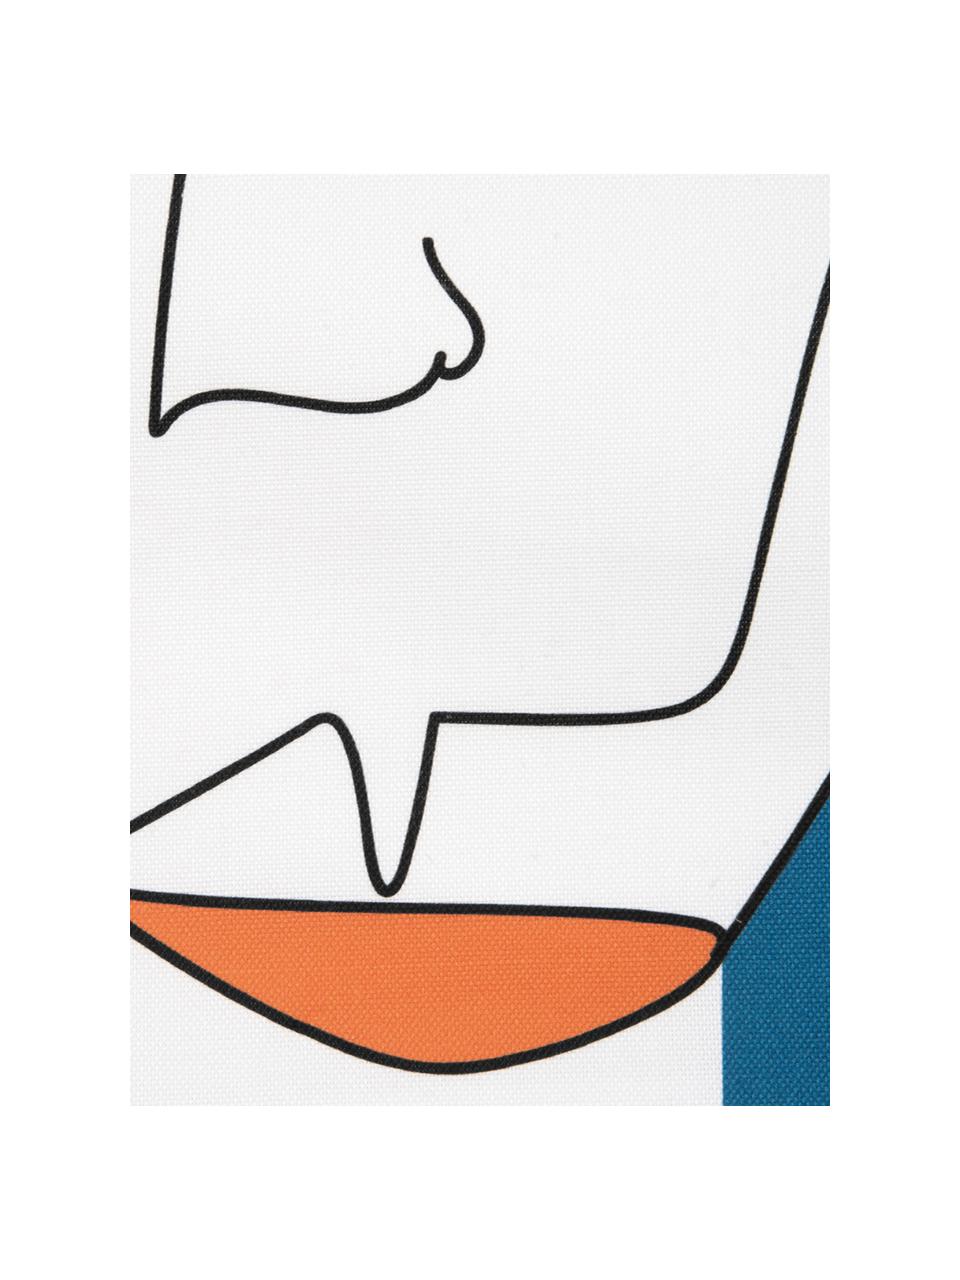 Kissenhülle Adrian mit abstraktem Print in Bunt, Webart: Panama, Weiß, Mehrfarbig, 40 x 40 cm